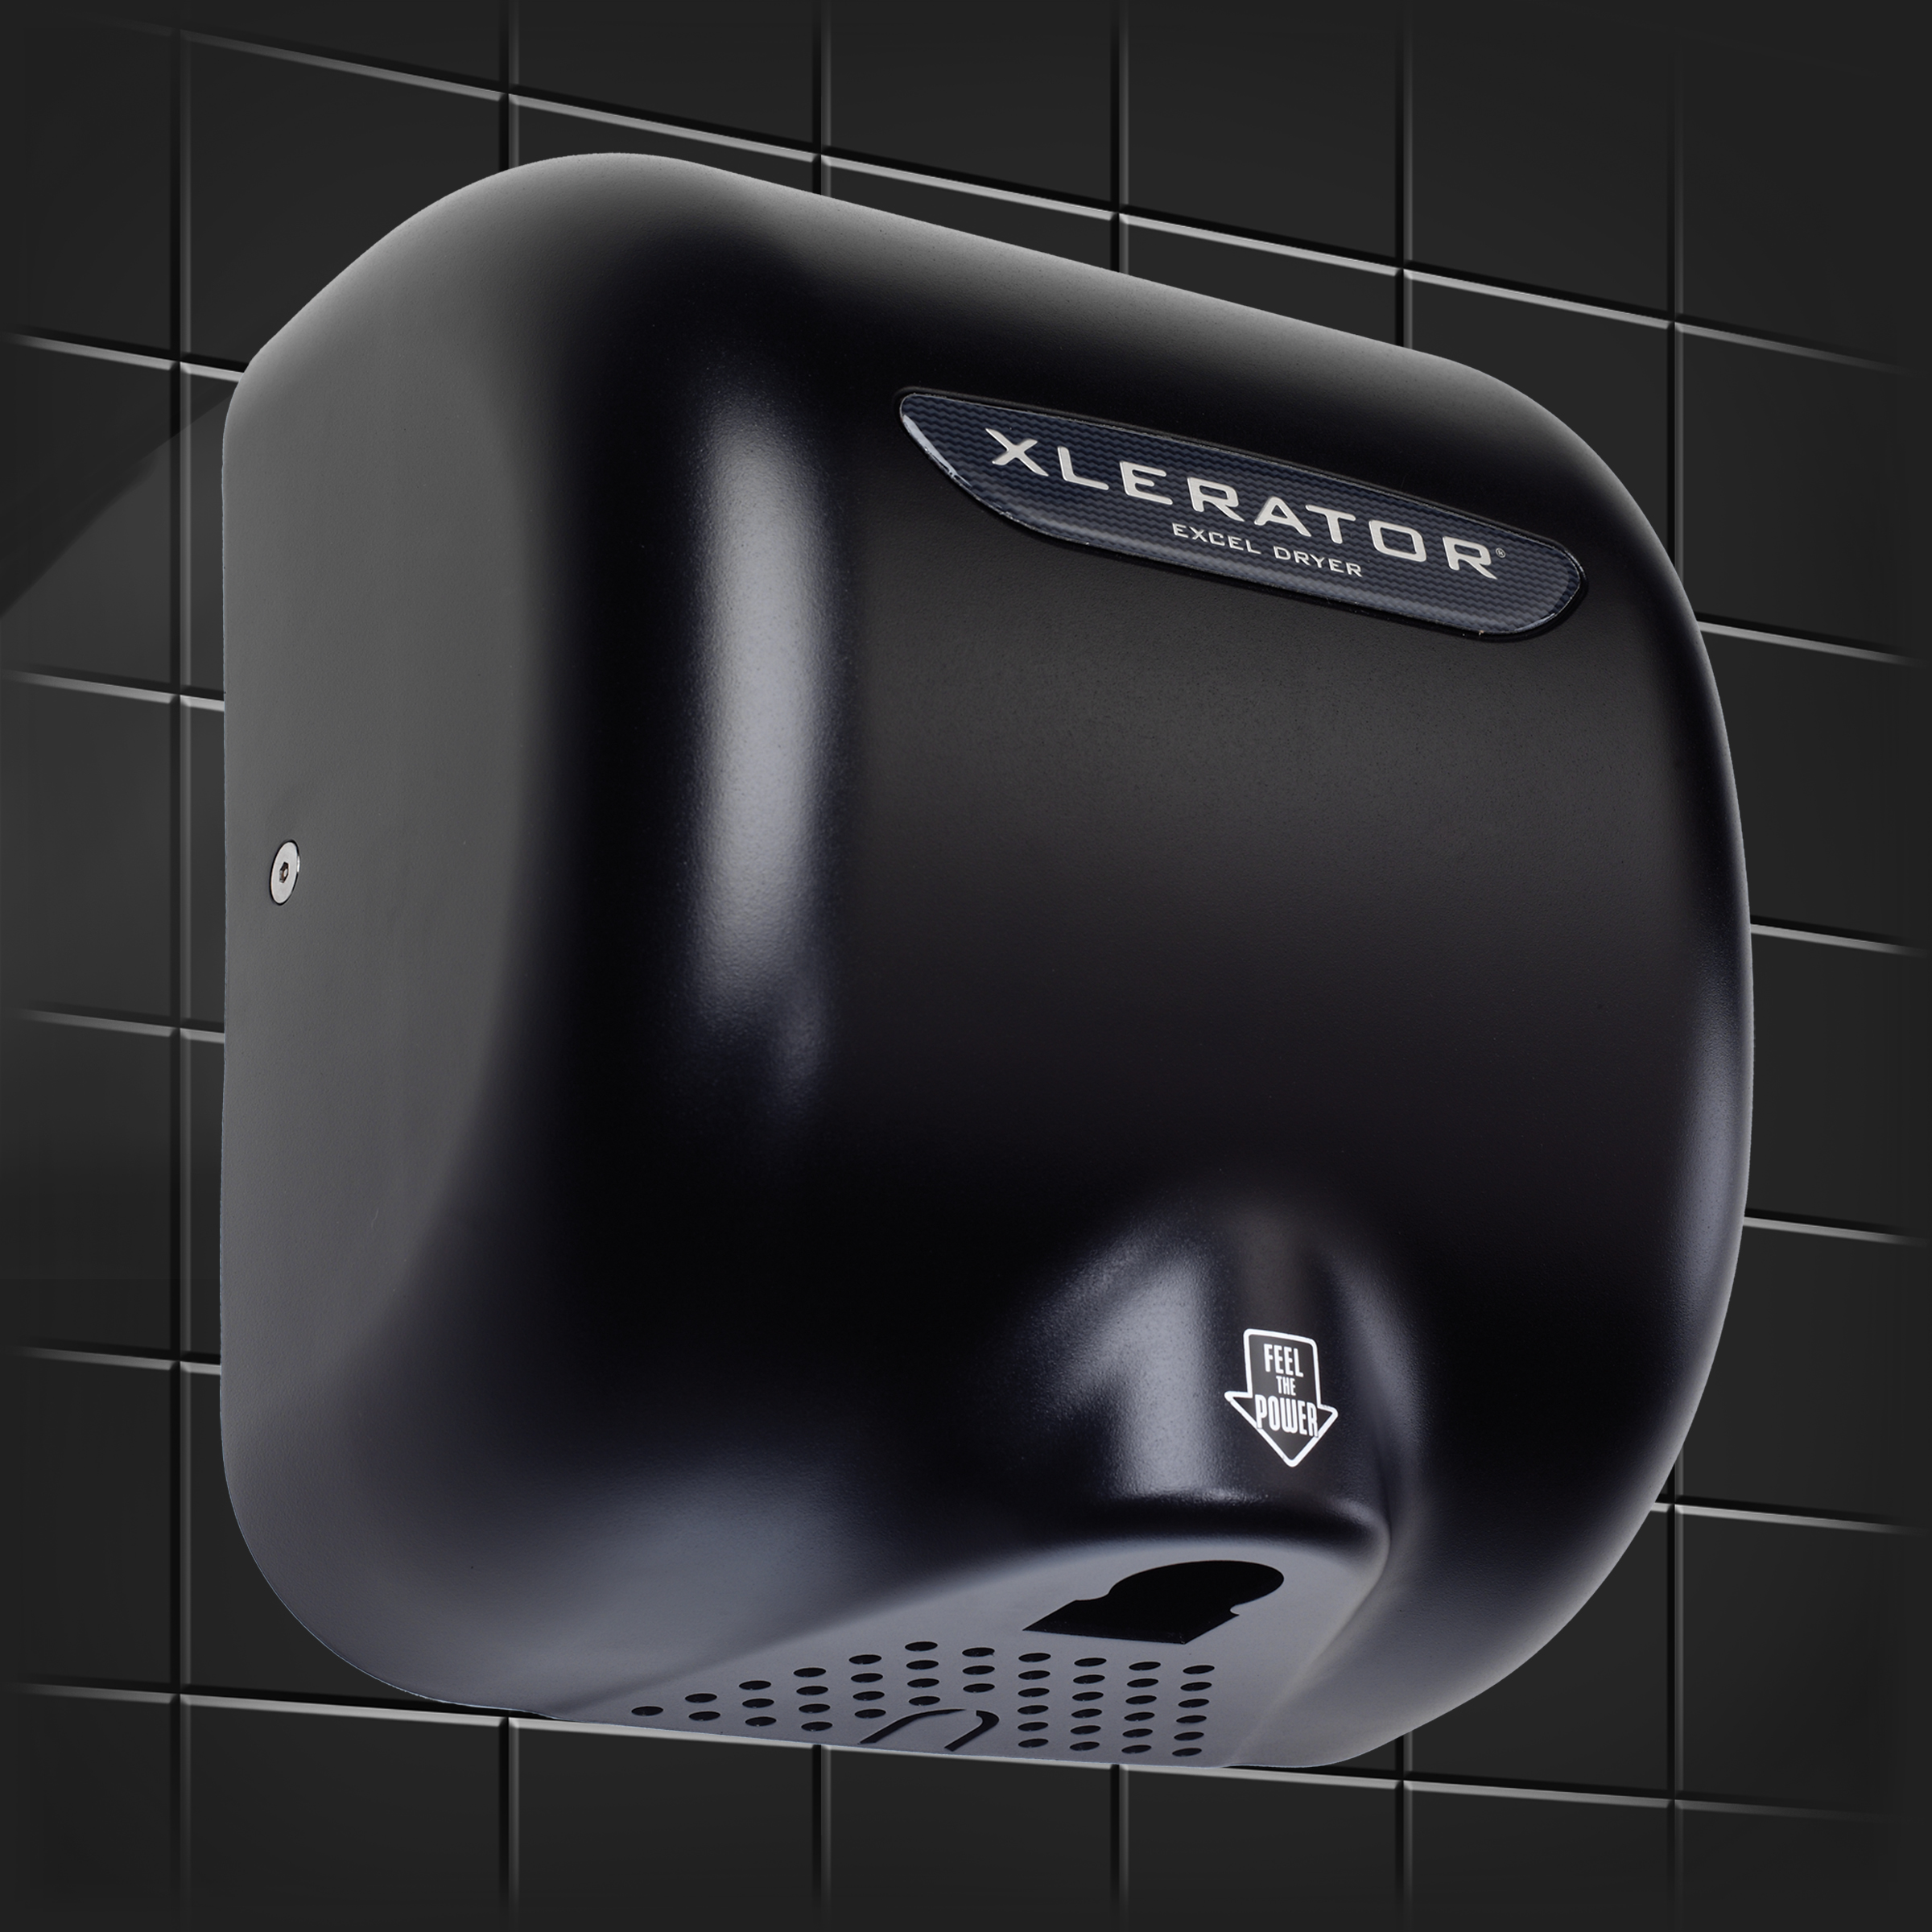 Excel Dryer XLERATOR Hand Dryer XL-BL, Zinc Die-Cast Cover - Black, Automatic Sensor, Surface Mounte